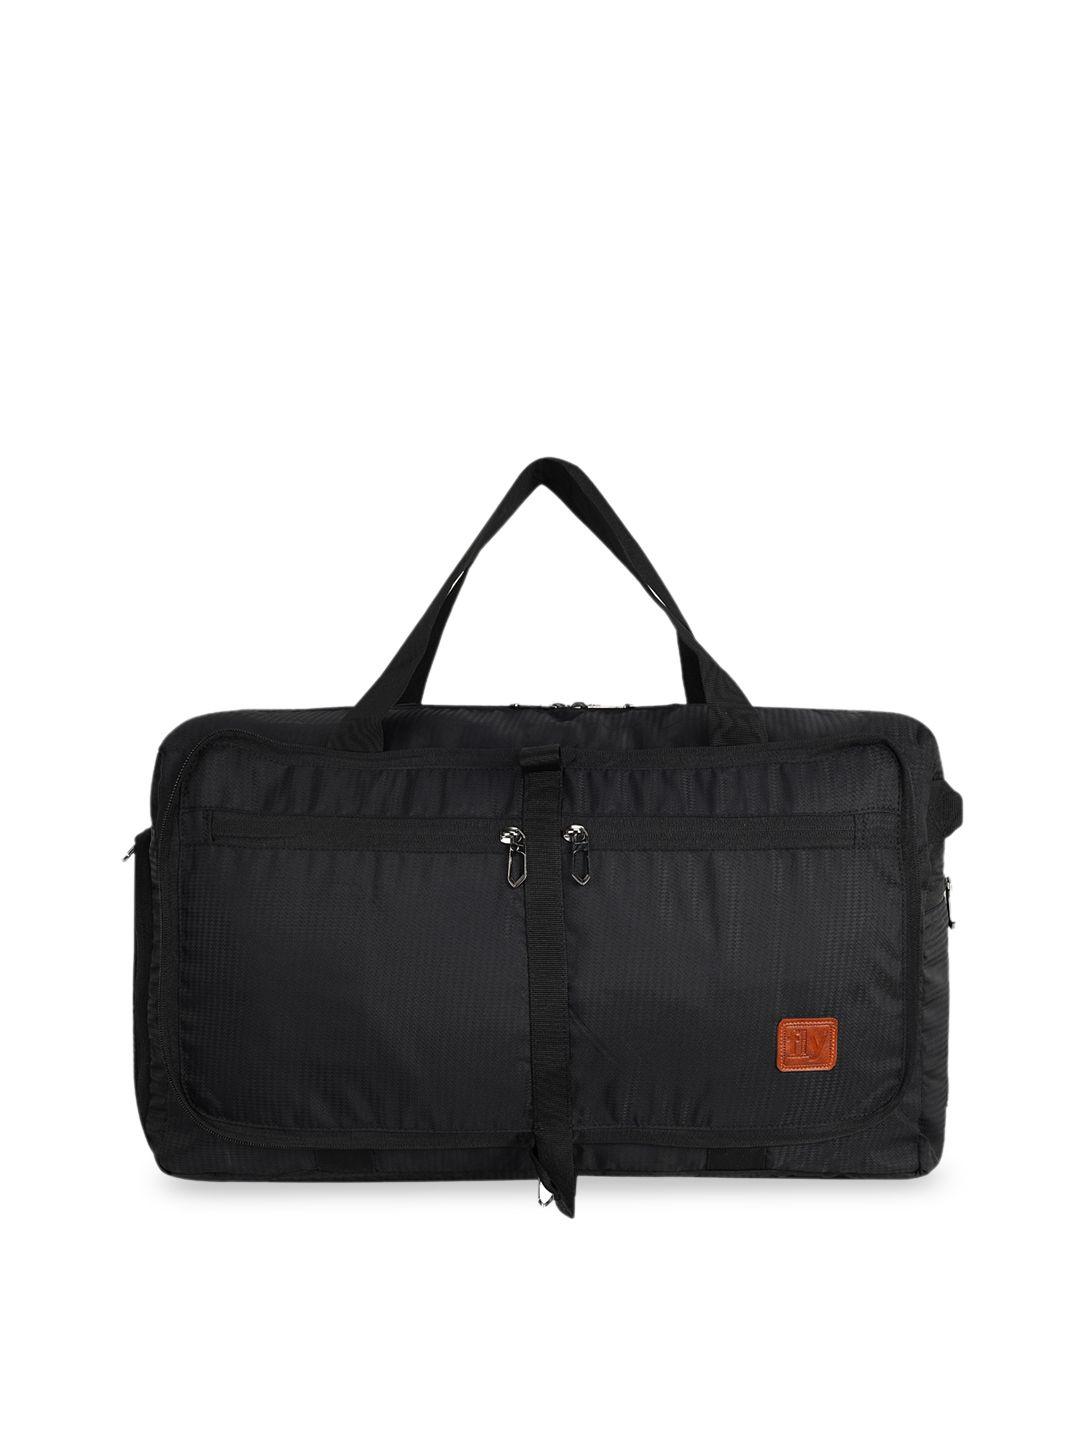 fly fashion grey textured foldable travel duffel luggage bag